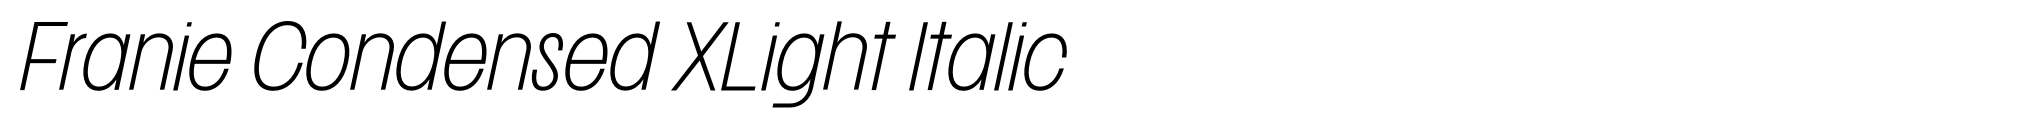 Franie Condensed XLight Italic image